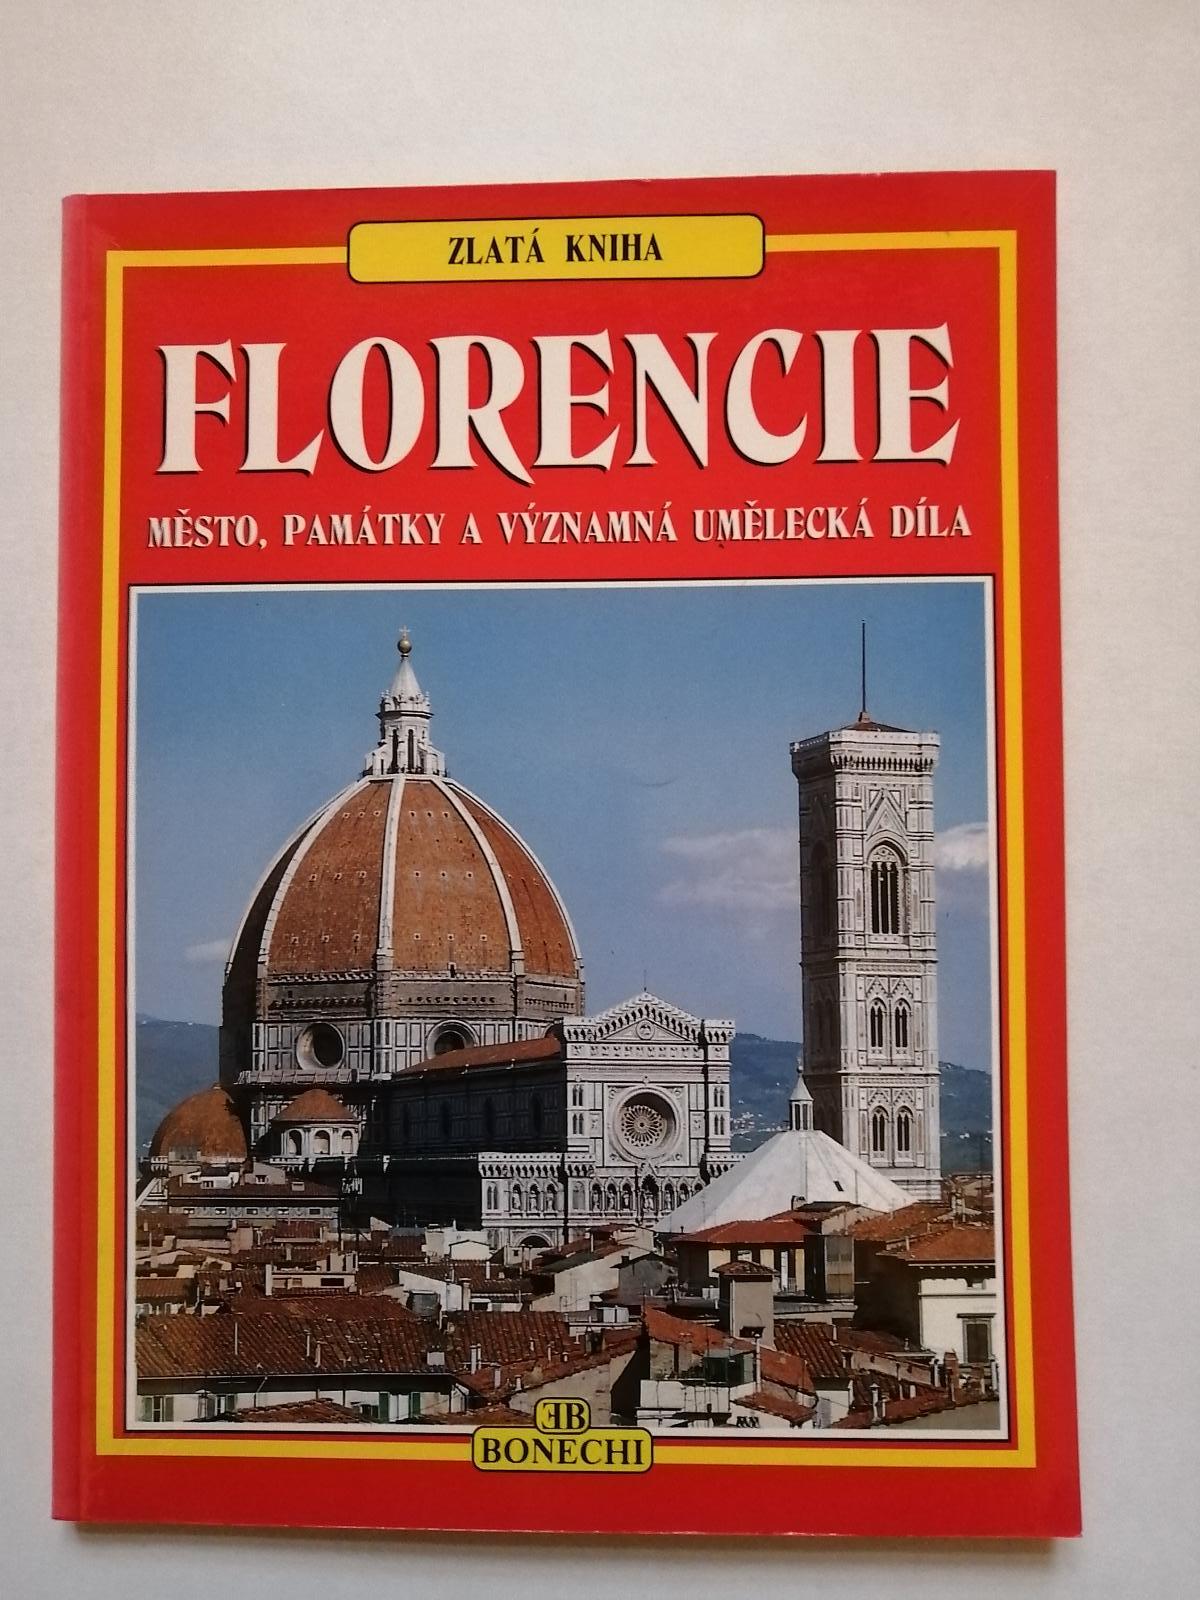 Zlatá kniha - Florencia - mesto, pamiatky a významné umelecké diela - Knihy